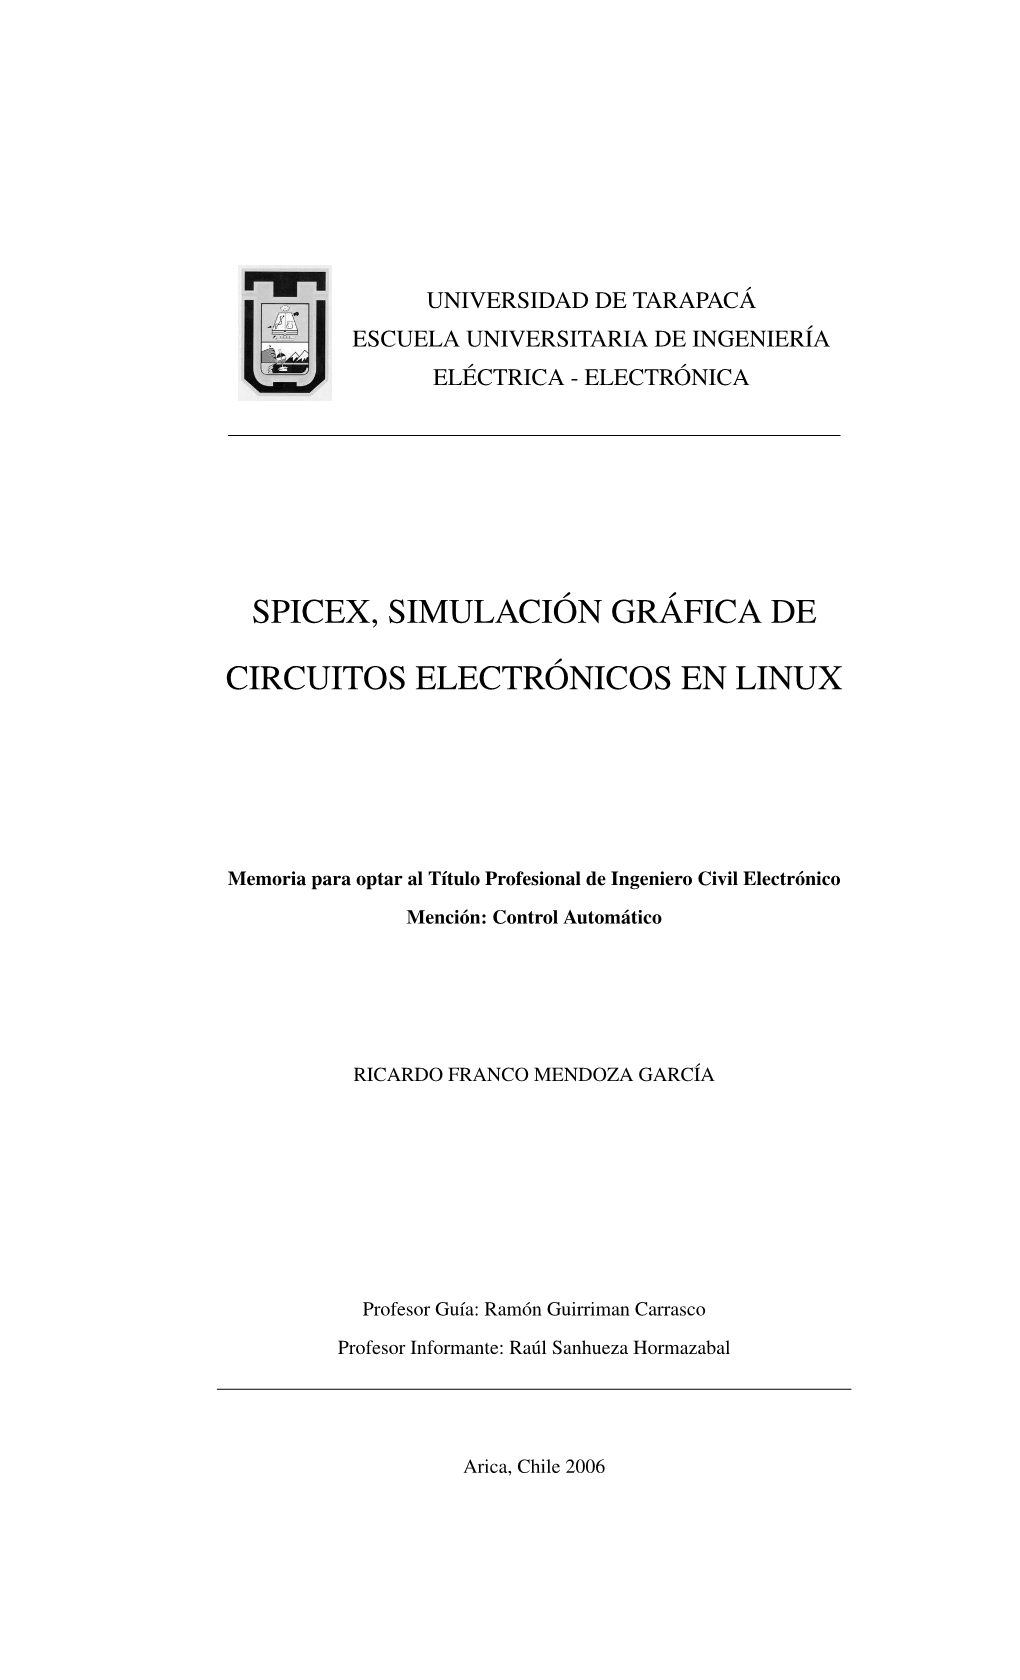 Spicex, Simulación Gráfica De Circuitos Electrónicos En Linux